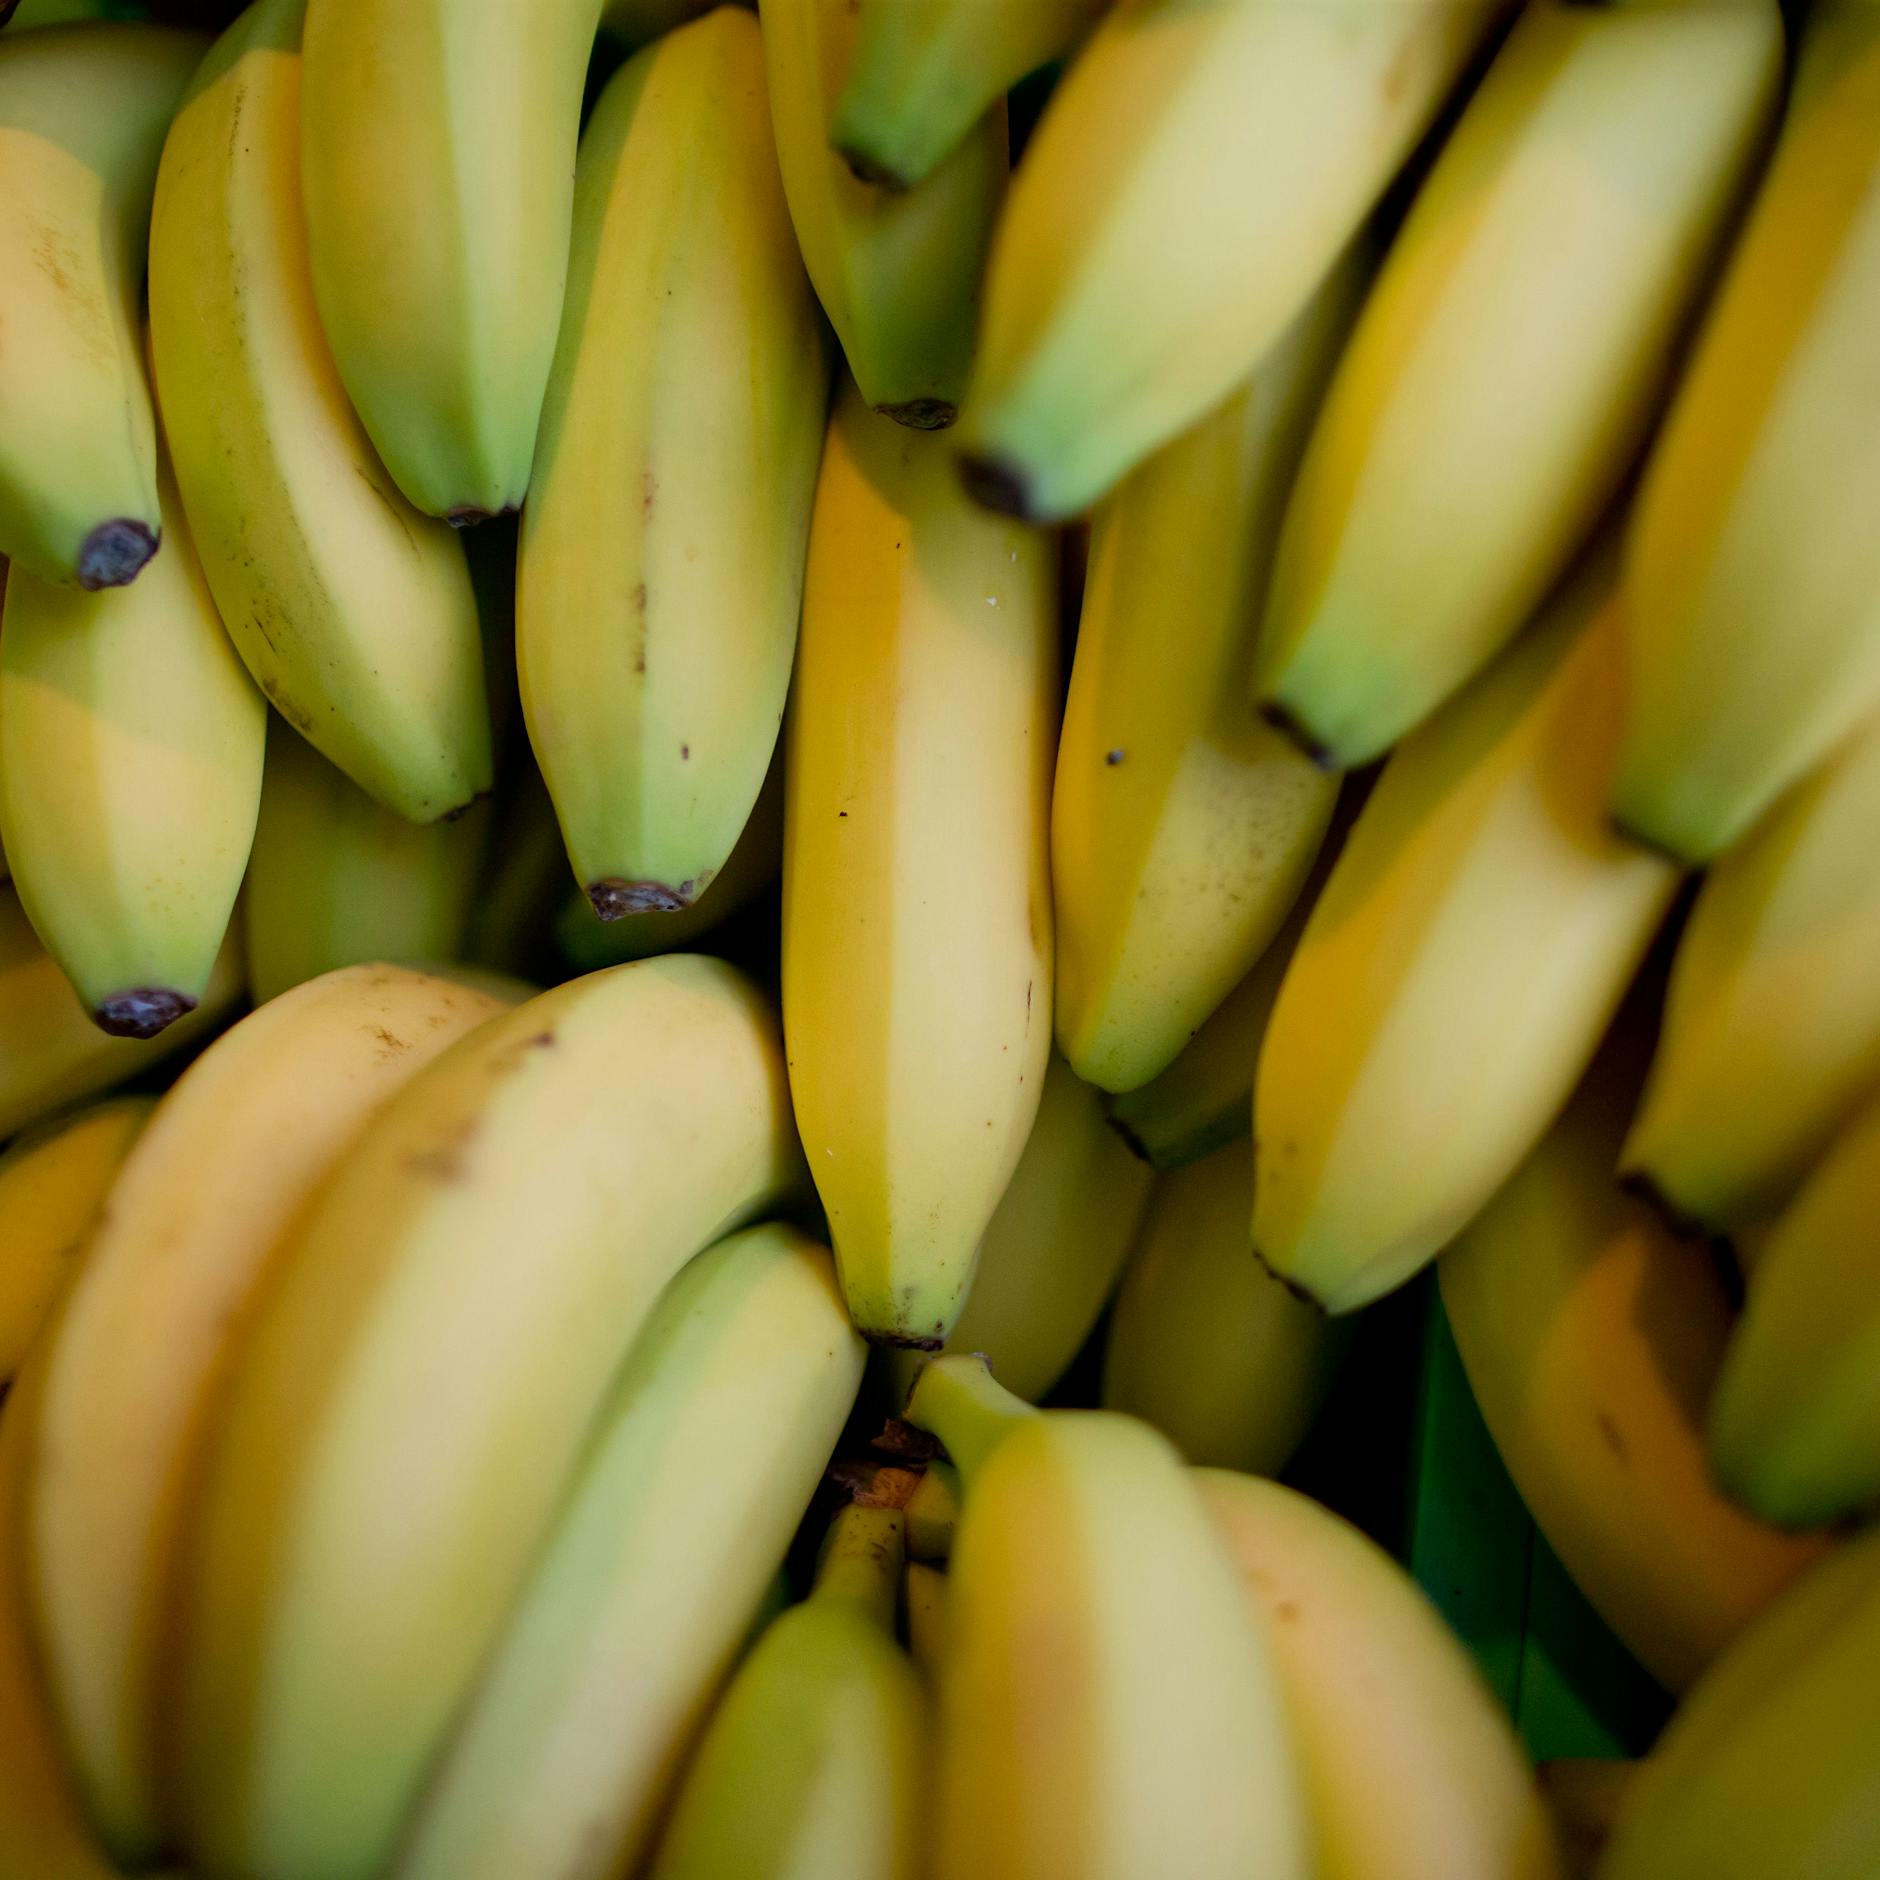 Mega-Kokainfund in Bananenkisten im Supermarkt